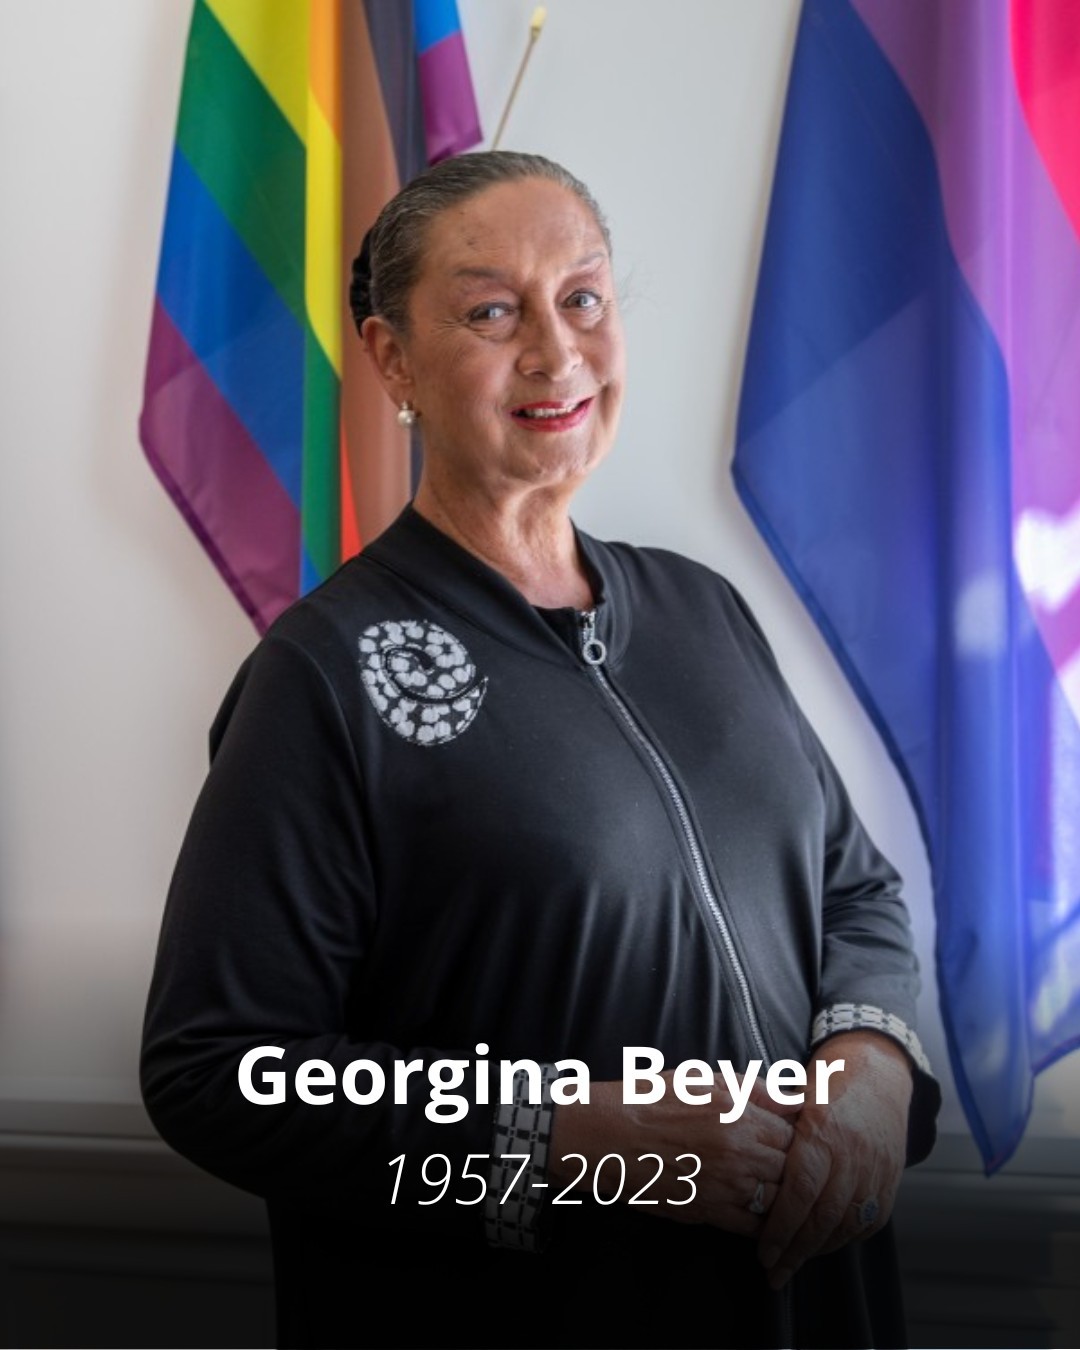 【訃報】世界で初めてトランスジェンダーとして国会議員に当選したジョージナ・ベイアー【g-lad xx】